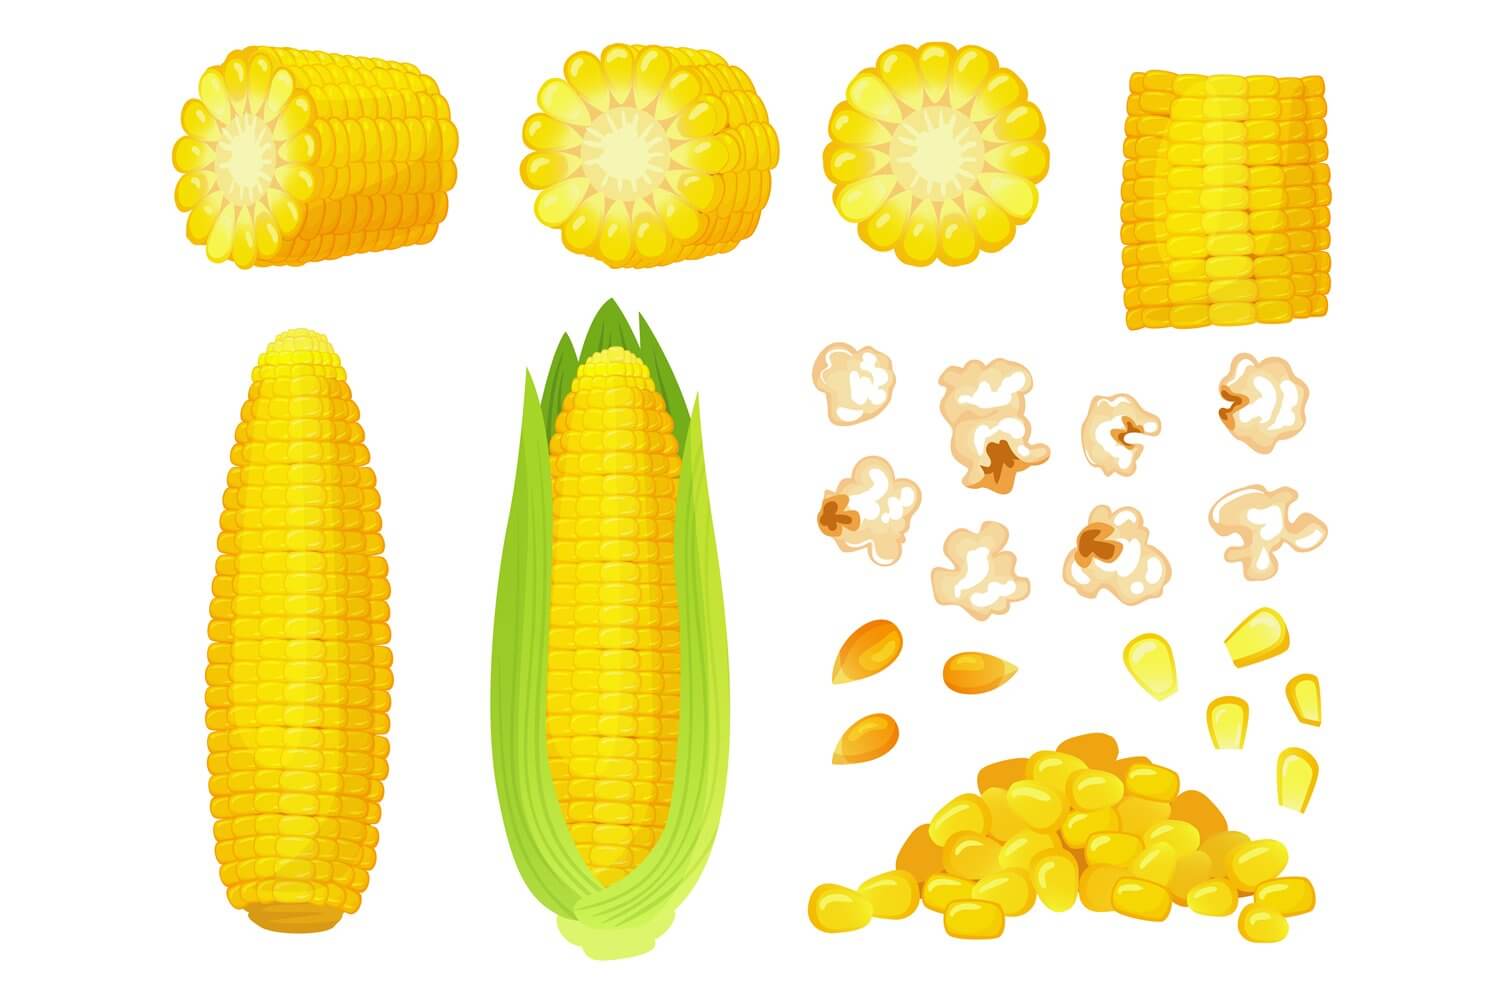 Big corn kernels drawn on cartoon corn.